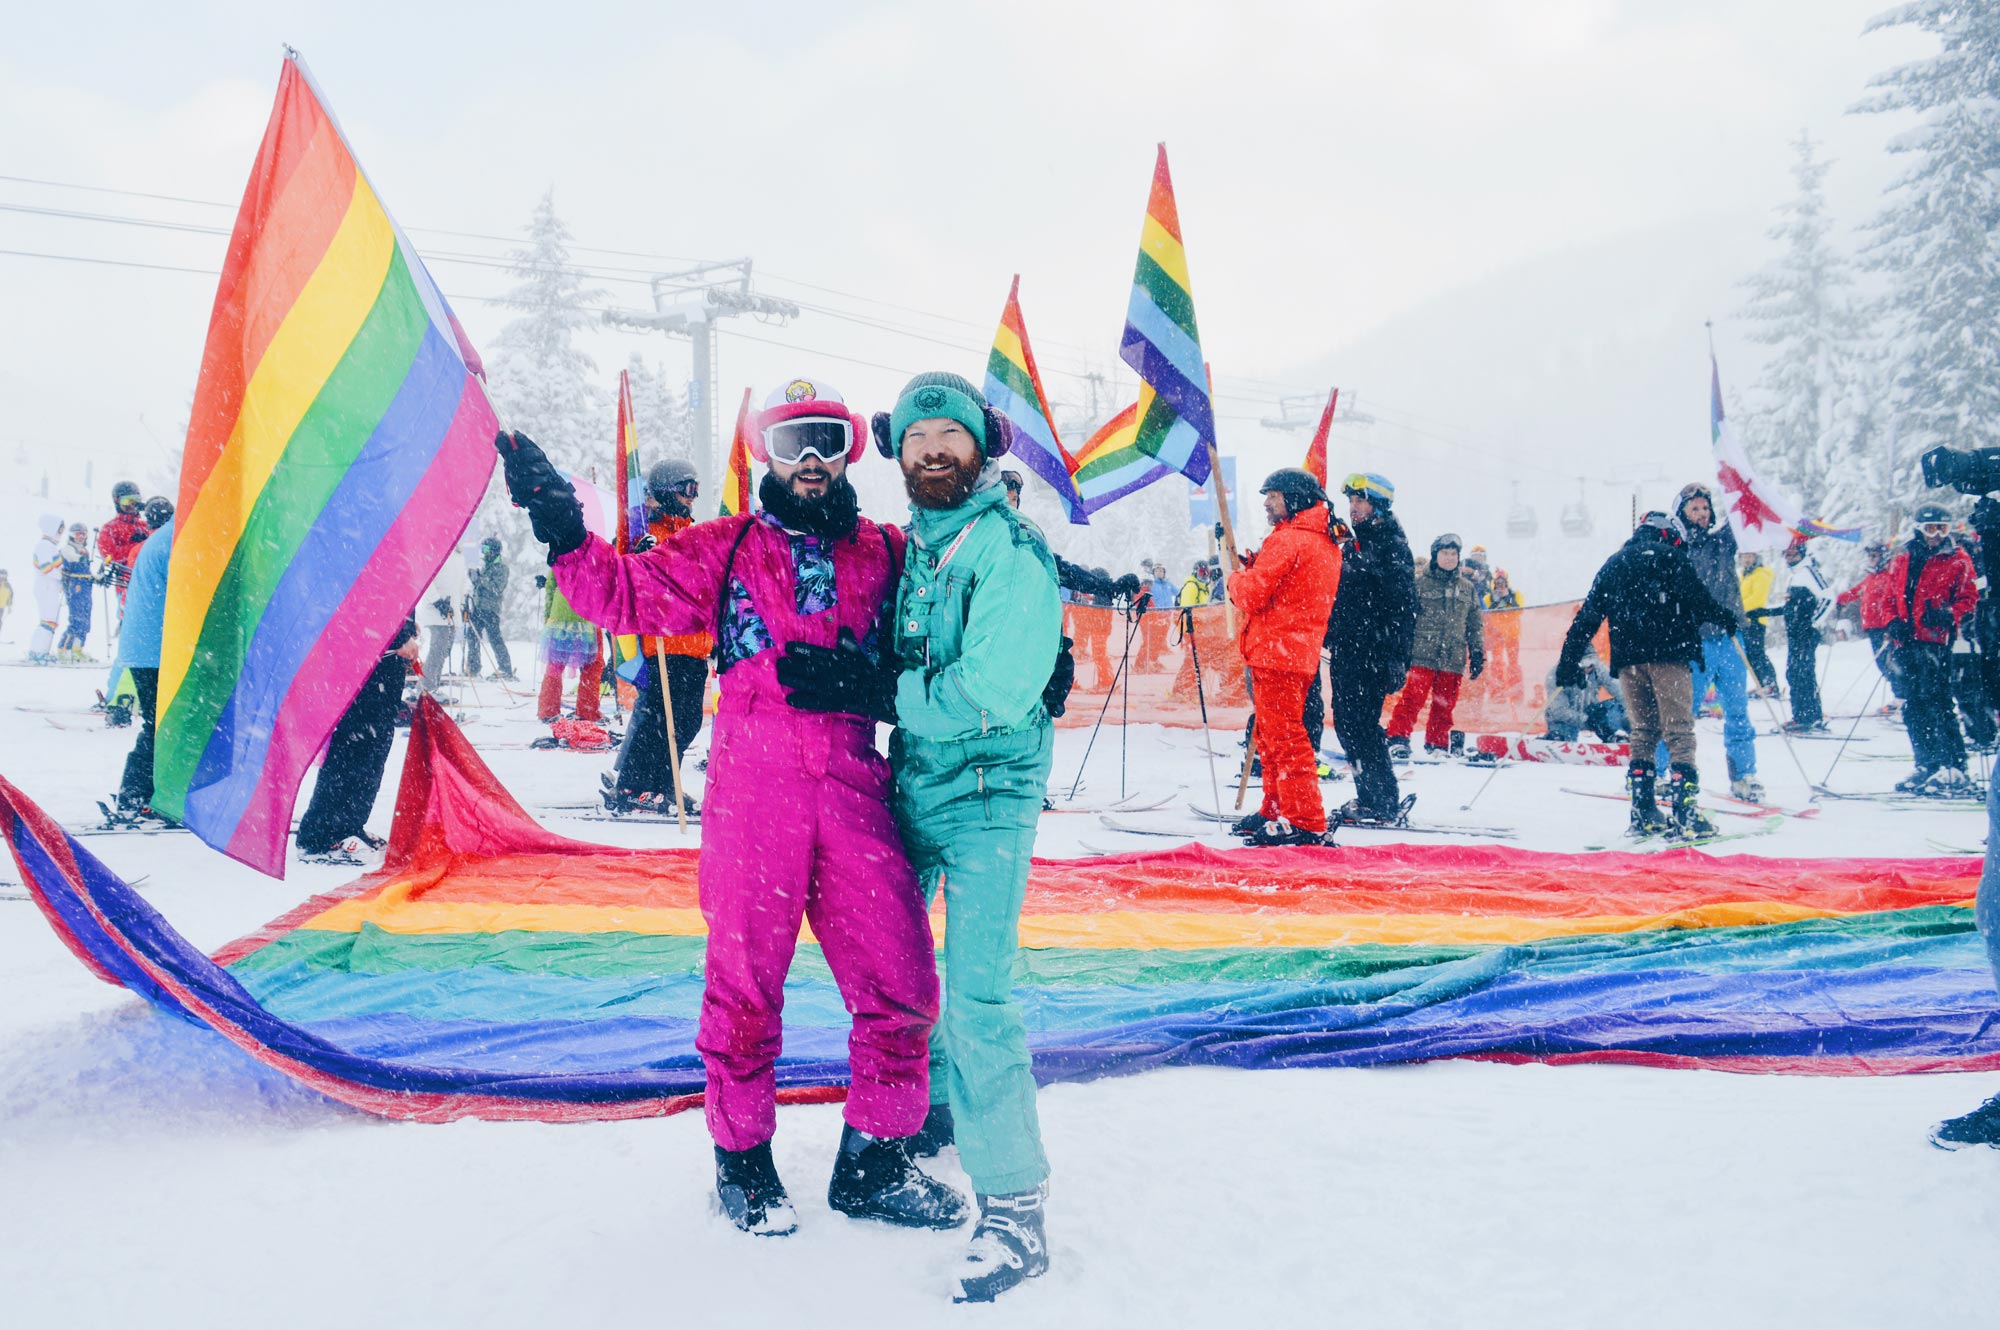 Top 13 Beste Schwule Skiwochen Gay Travel blogger Coupleofmen.com skiing and snowboarding | Top 13 Best Gay Ski Weeks Worldwide © CoupleofMen.com